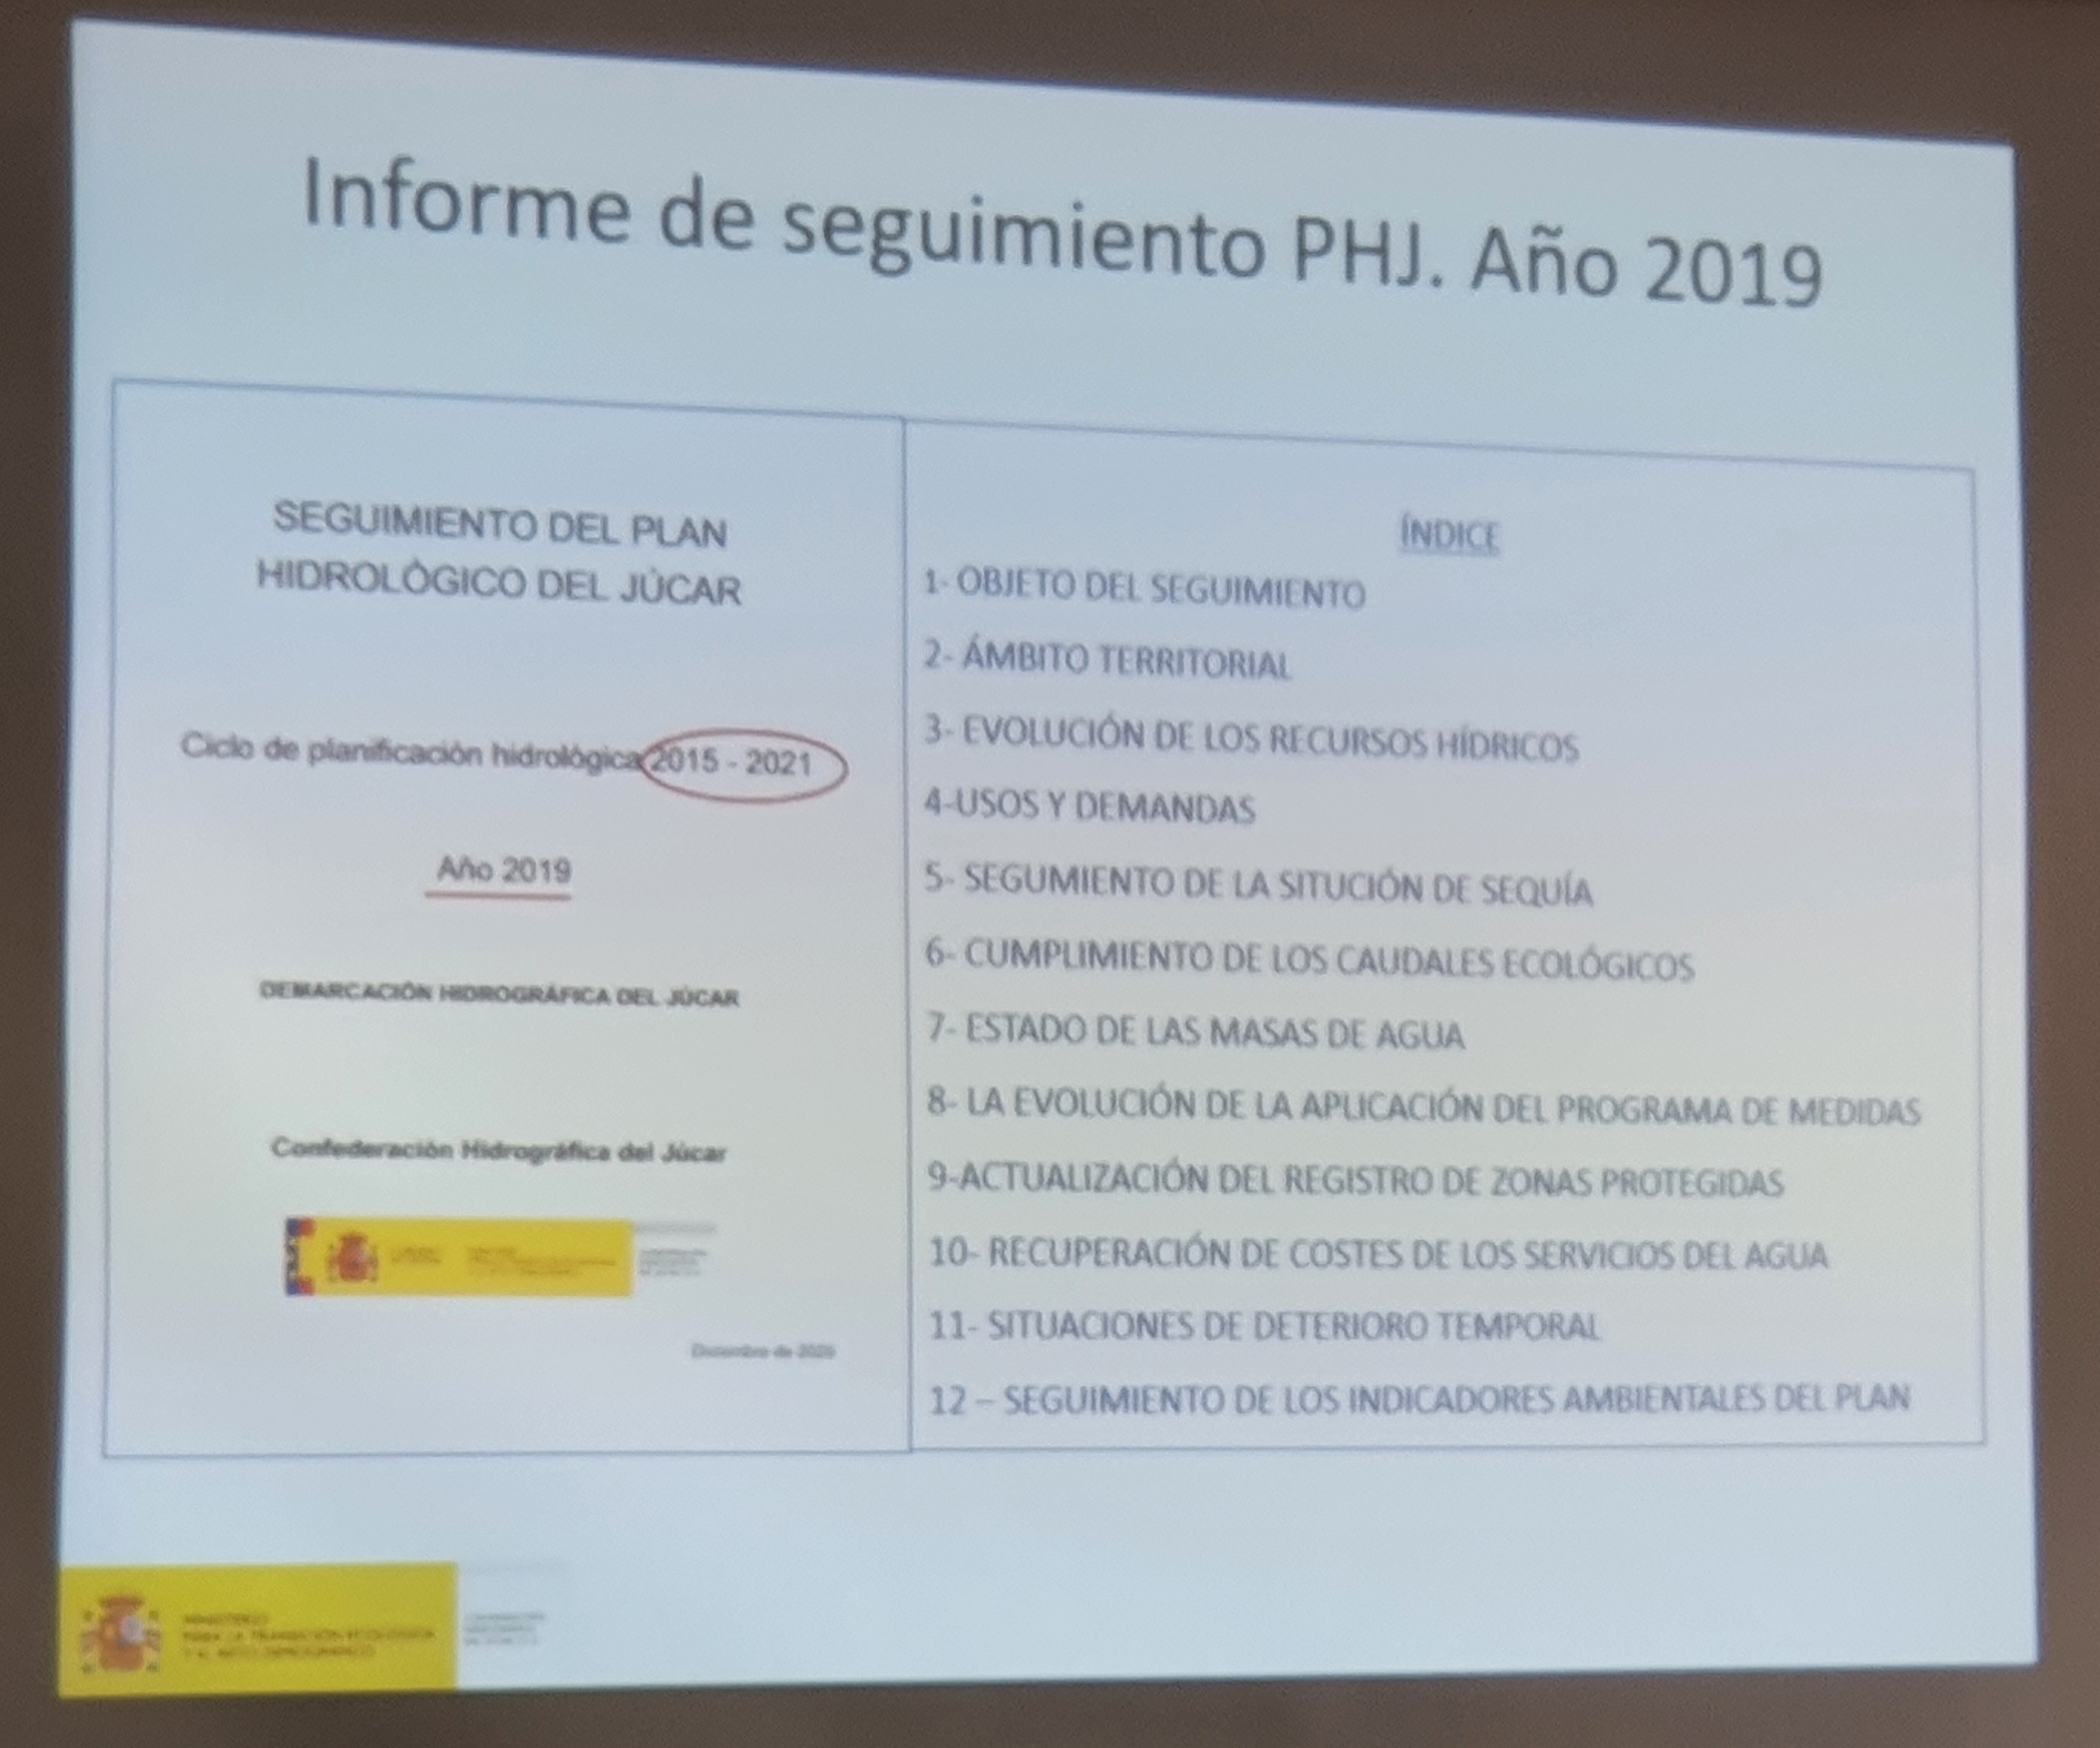 Pantalla de presentación del informe de seguimiento del PHJ, año 2019